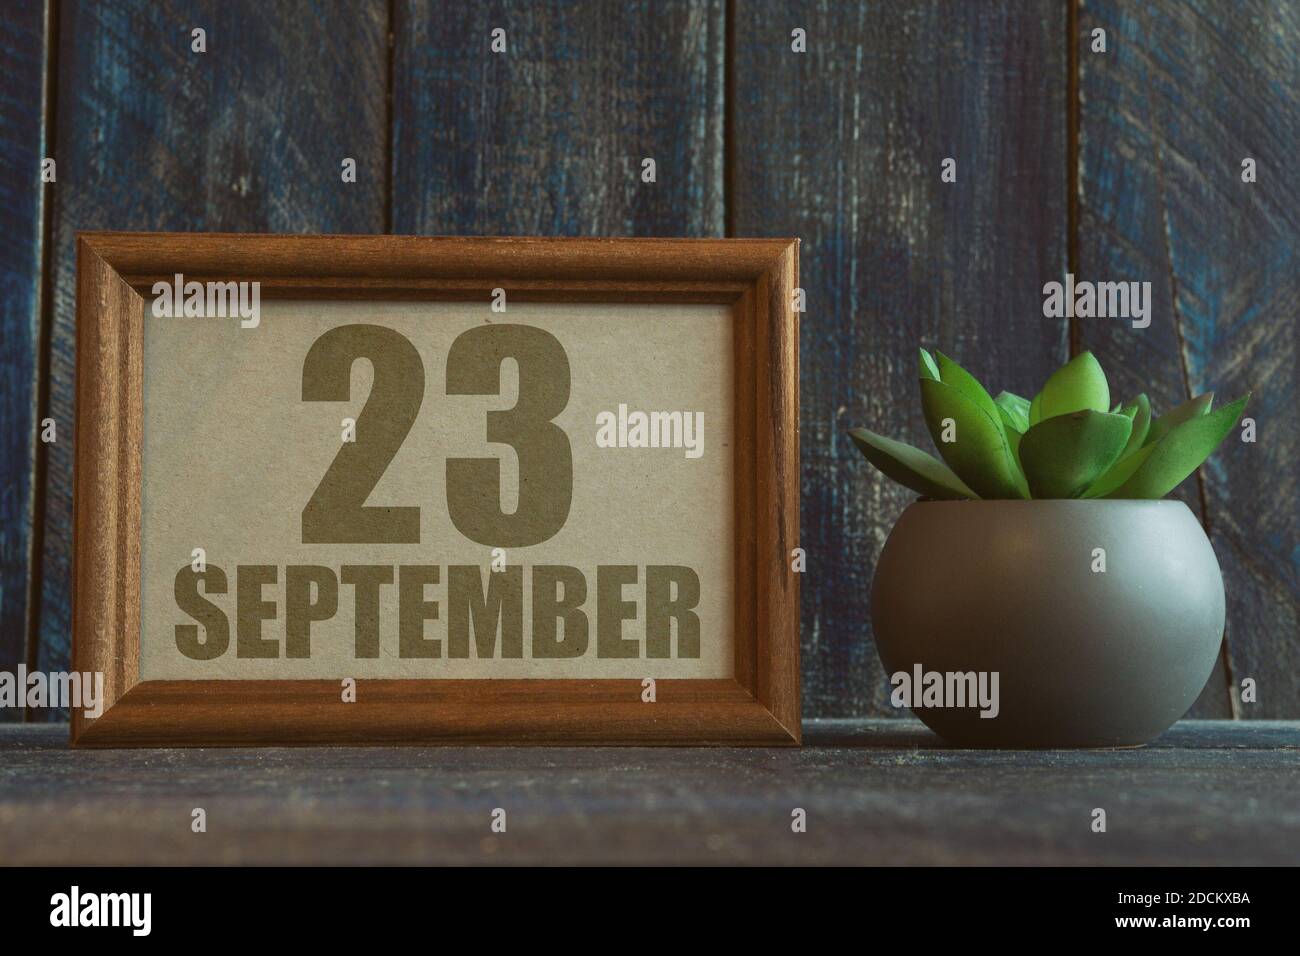 23 septembre. Jour 23 du mois, date dans le cadre à côté de succulent sur fond de bois automne mois, jour de l'année concept Banque D'Images